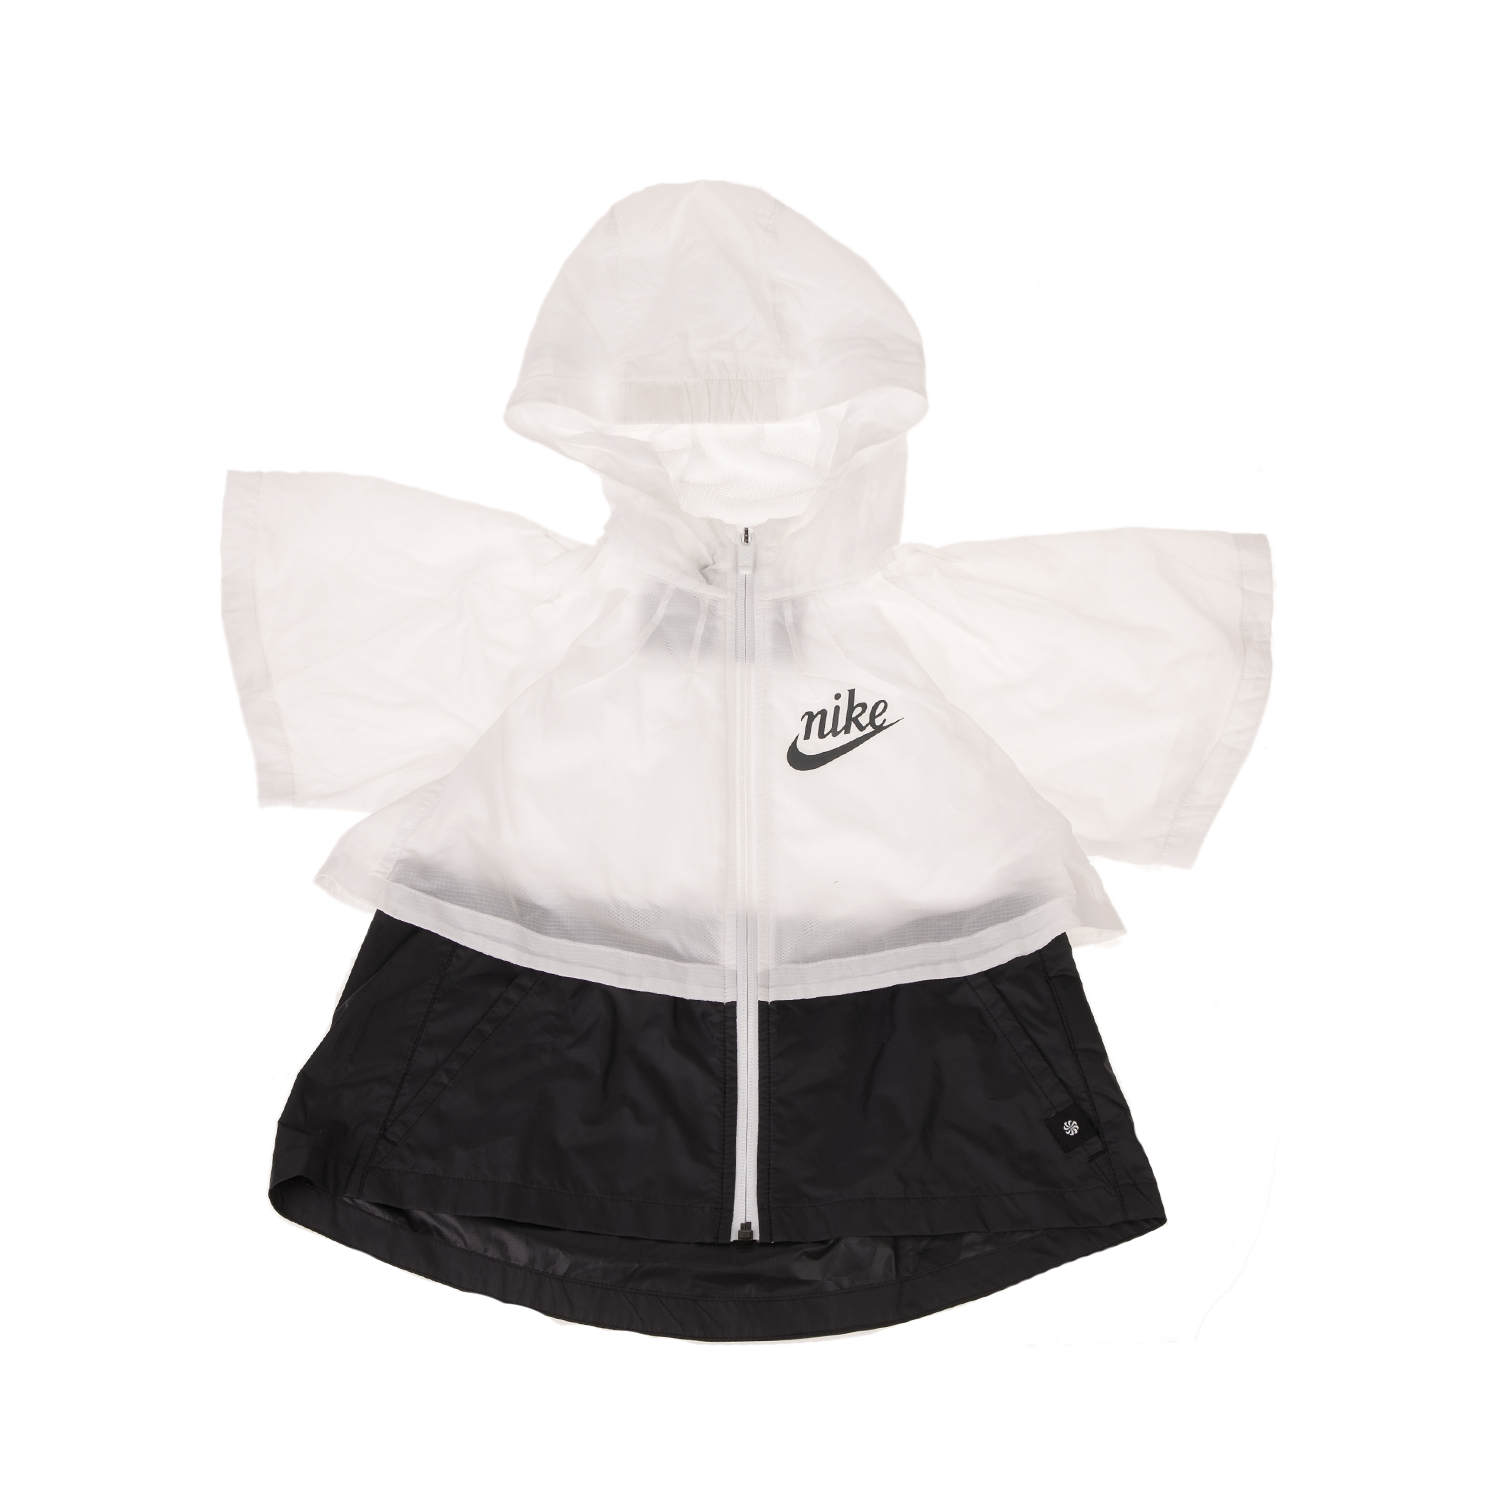 Παιδικά/Girls/Ρούχα/Πανωφόρια NIKE - Παιδικό αντιανεμικό τζάκετ NIKE G NSW JKT WR ICON λευκό-μαύρο